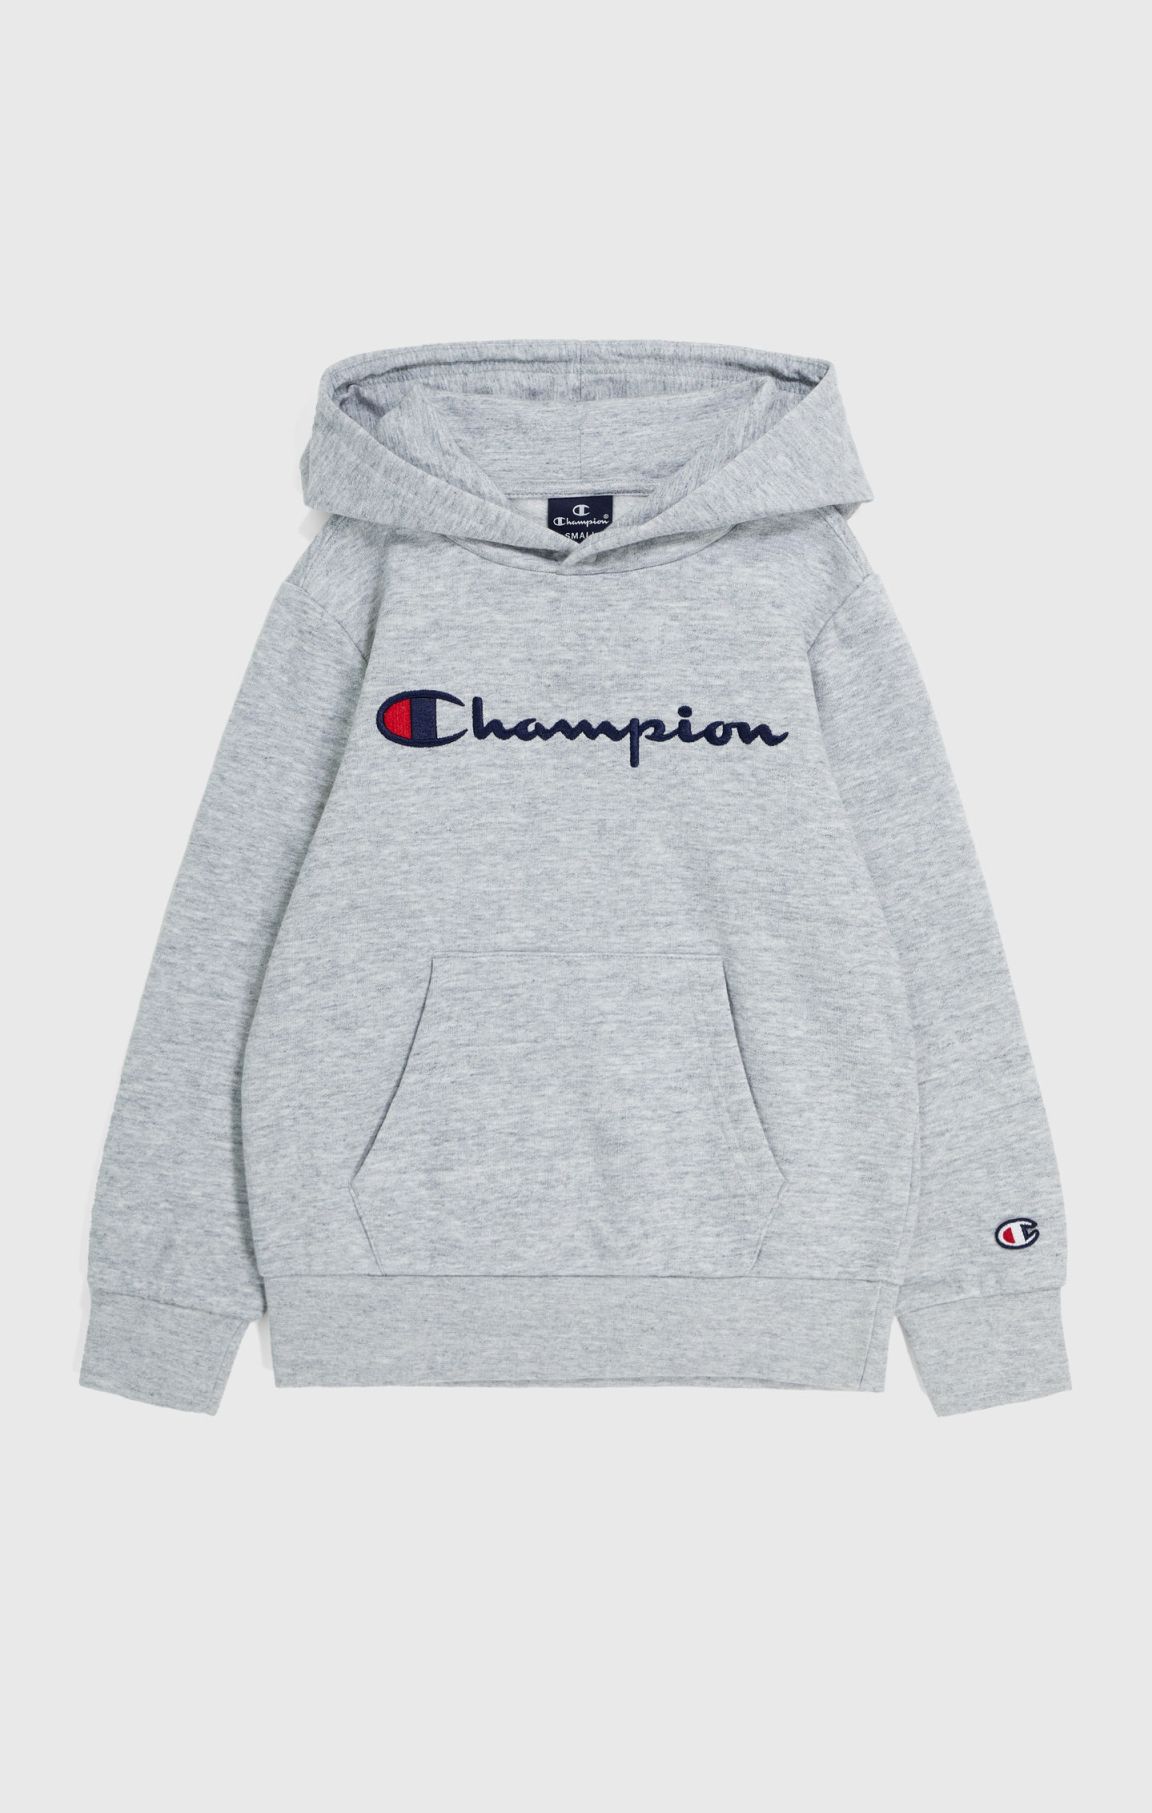 Kinder-Kapuzenpullover, Sweatshirts und Jacken | Champion